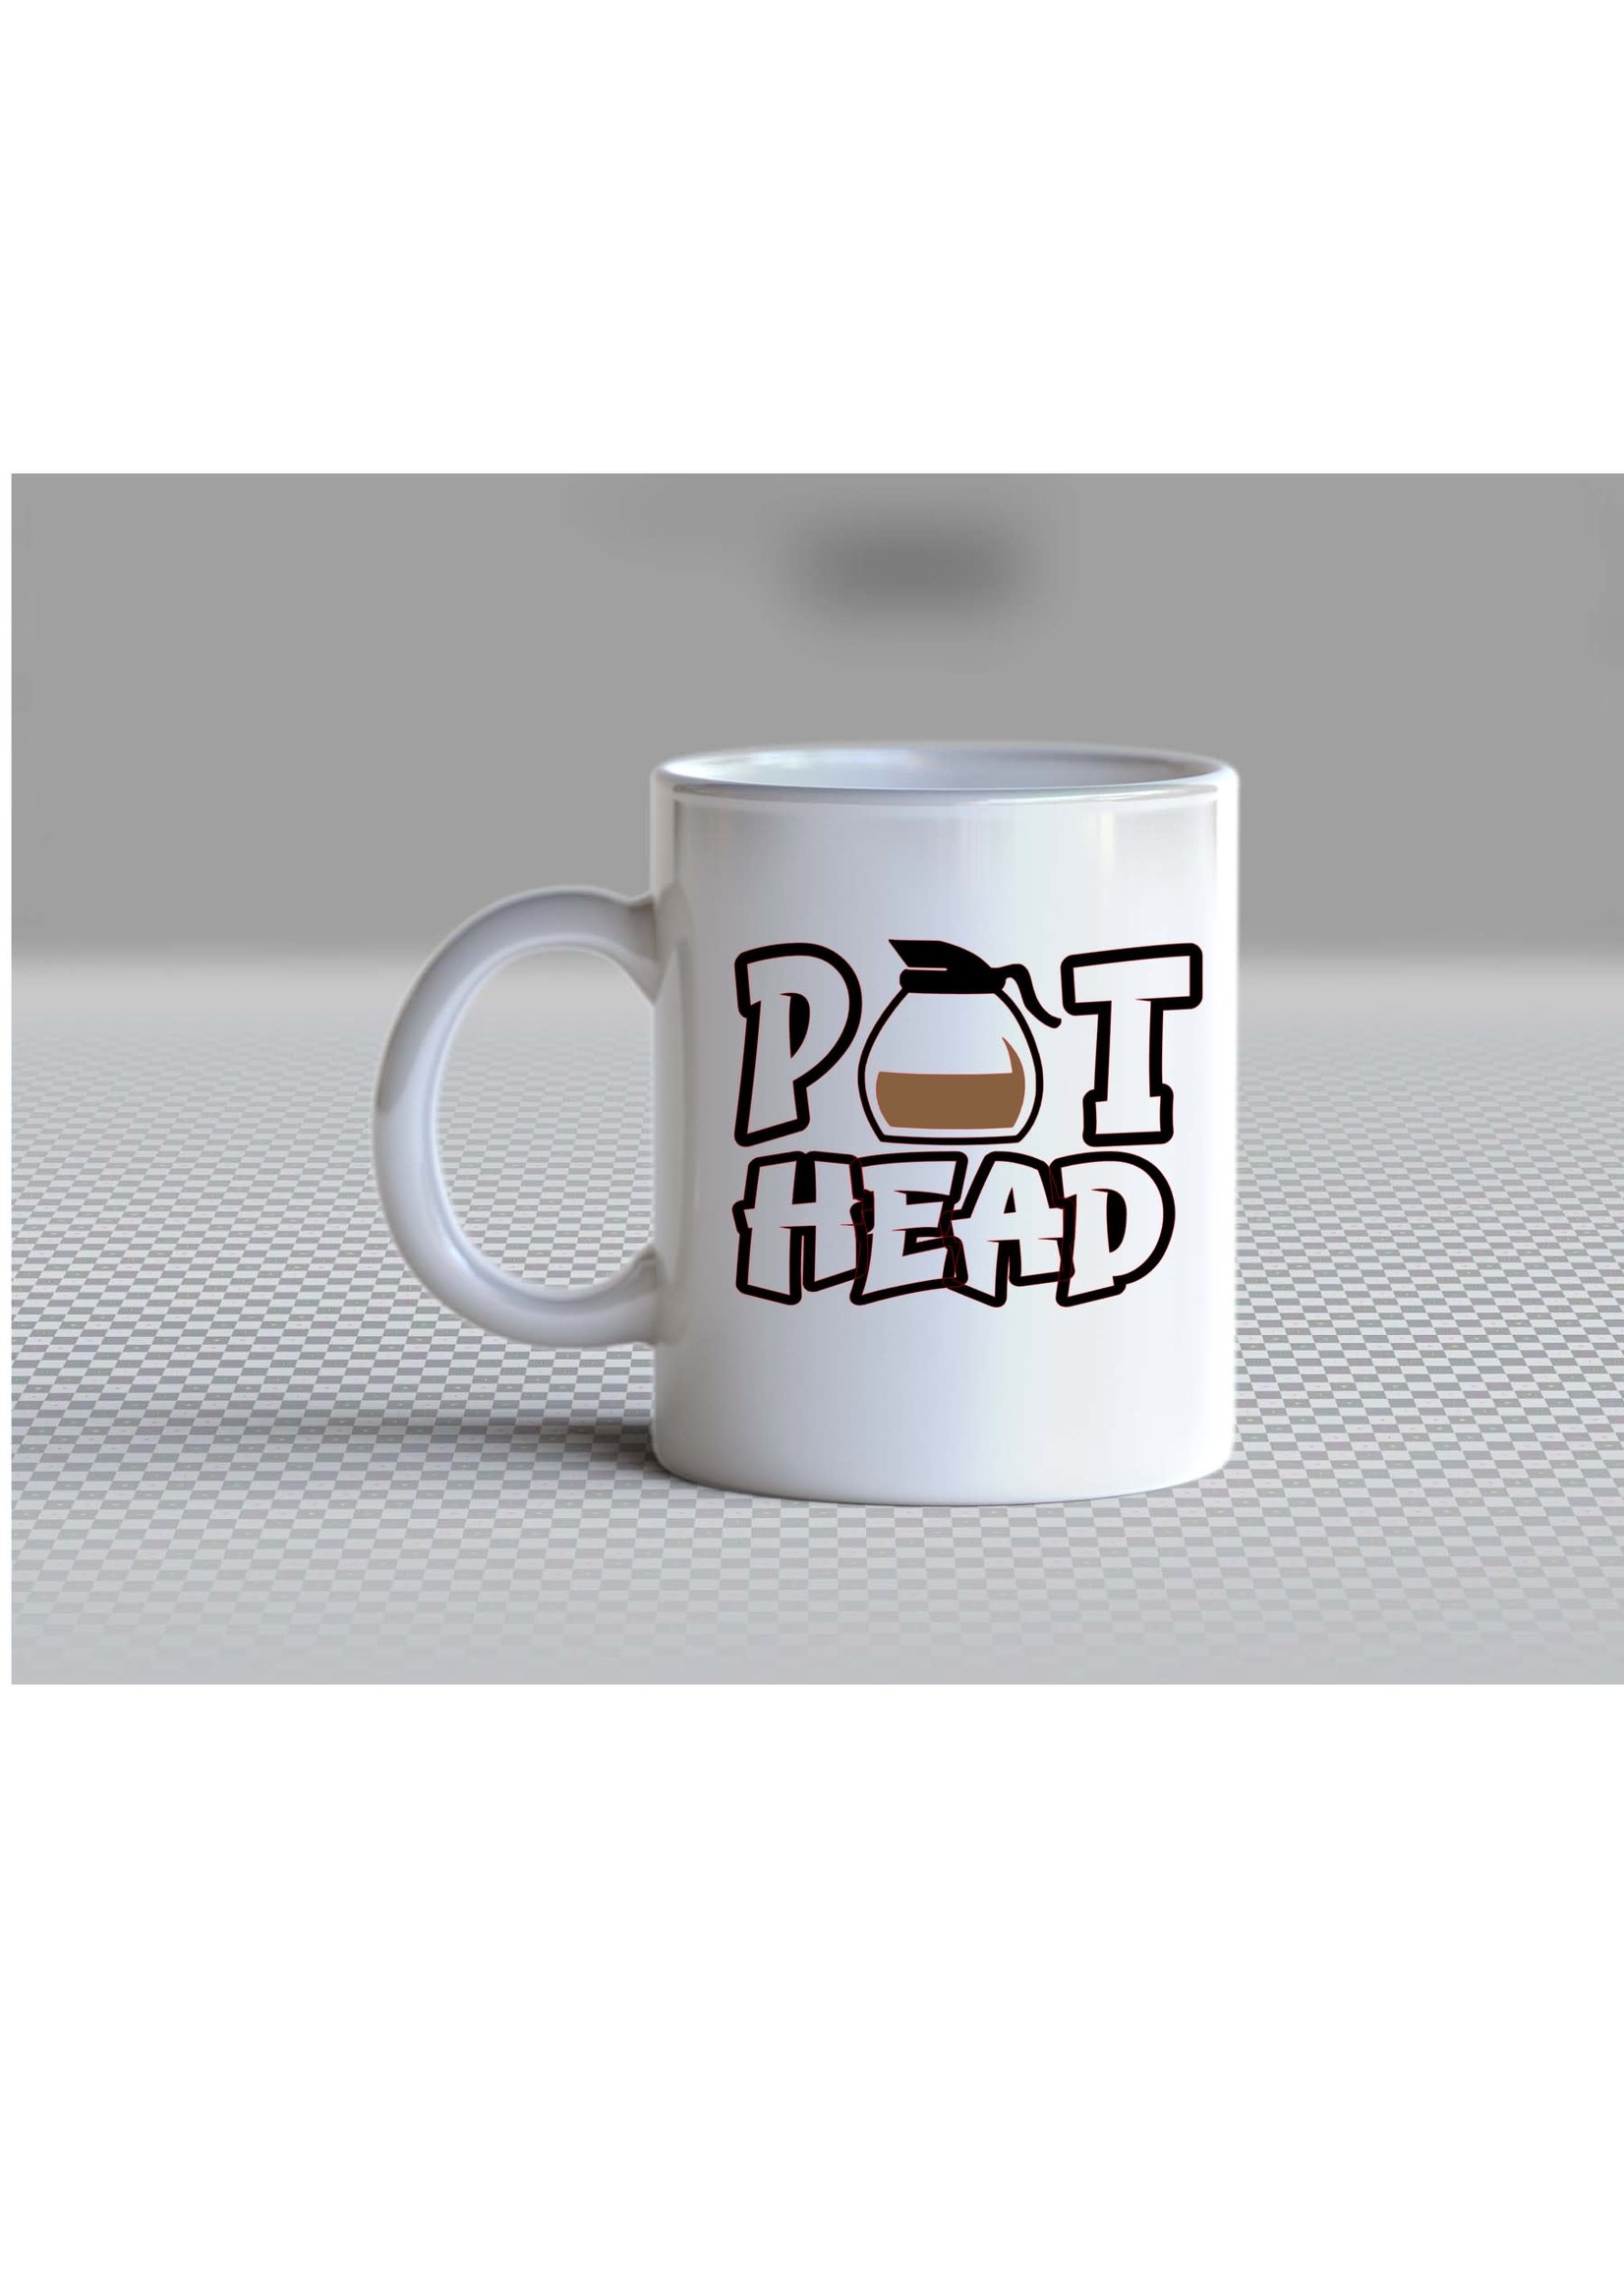 Pot Head mug